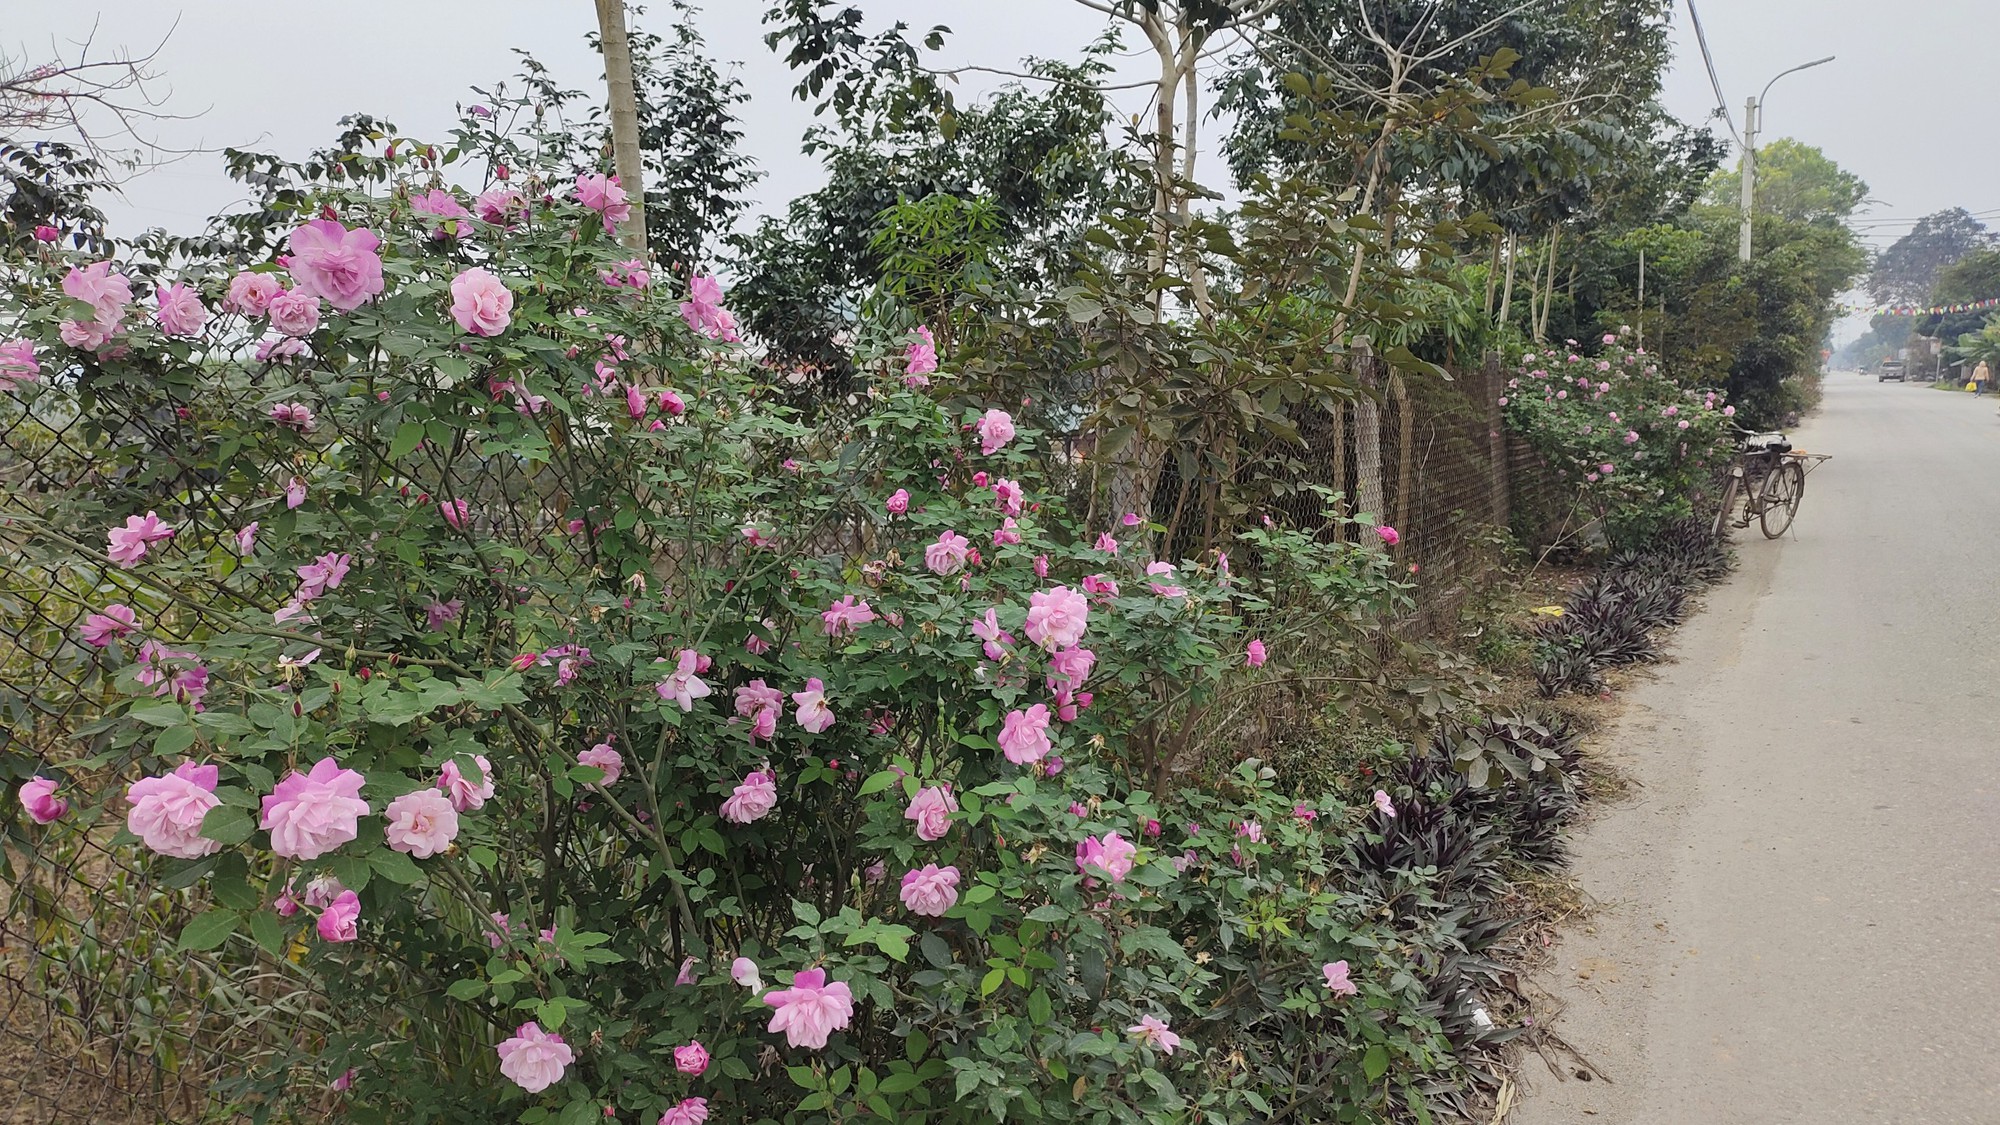 Đường nông thôn mới ở Ba Vì trồng hoa hồng nở rực rỡ, ai đi qua cũng phải xuýt xoa  - Ảnh 11.